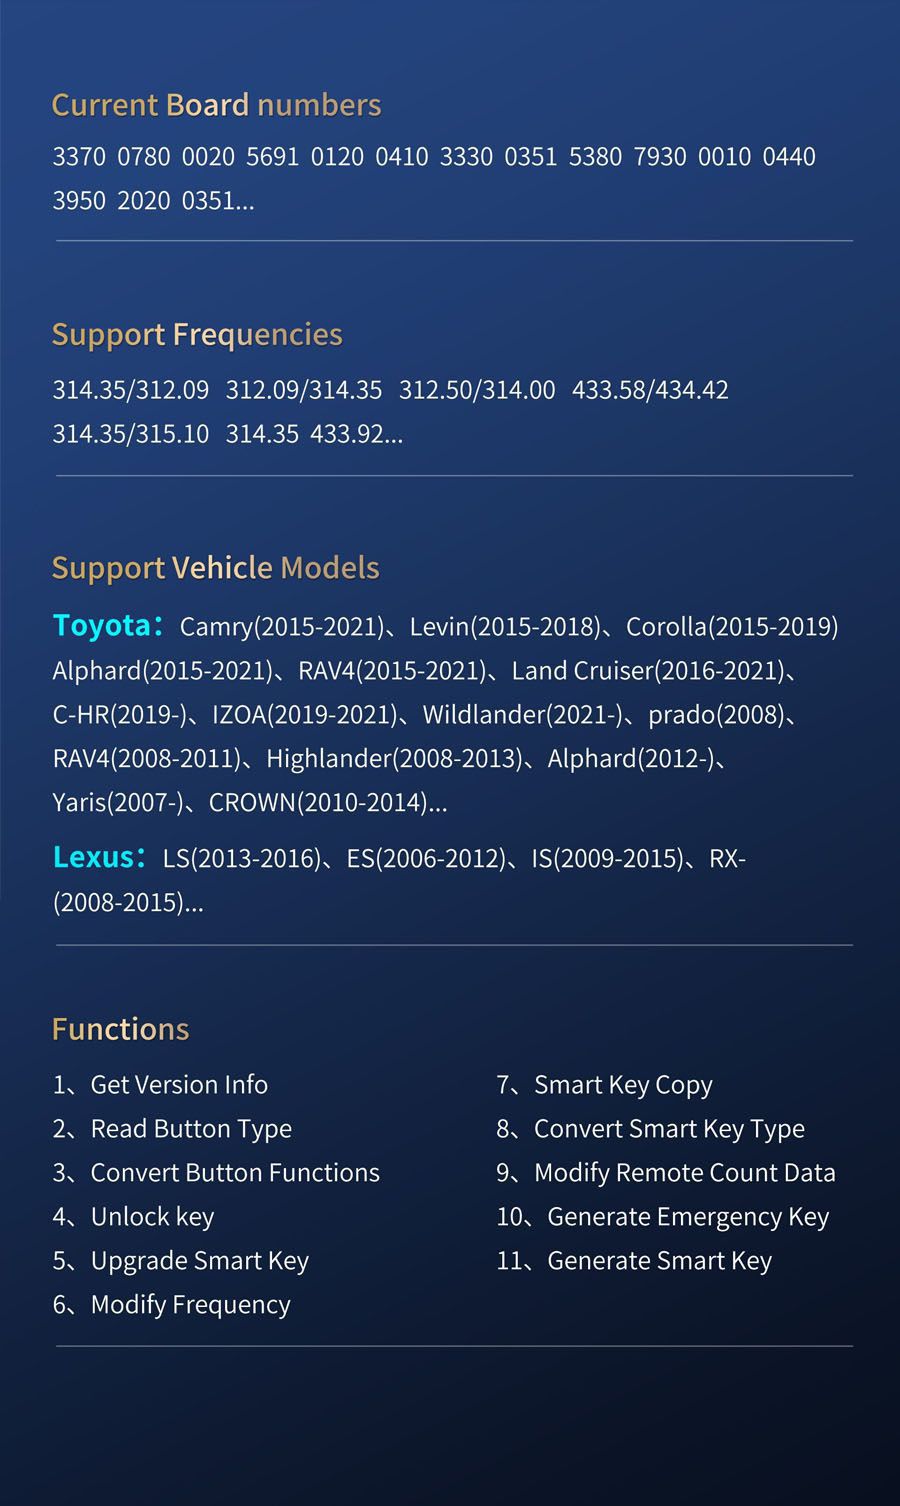 Lonsdor LT20 8A+4D Toyota Lexus Smart Key Convert Smart Key Typ Frequenz ändern